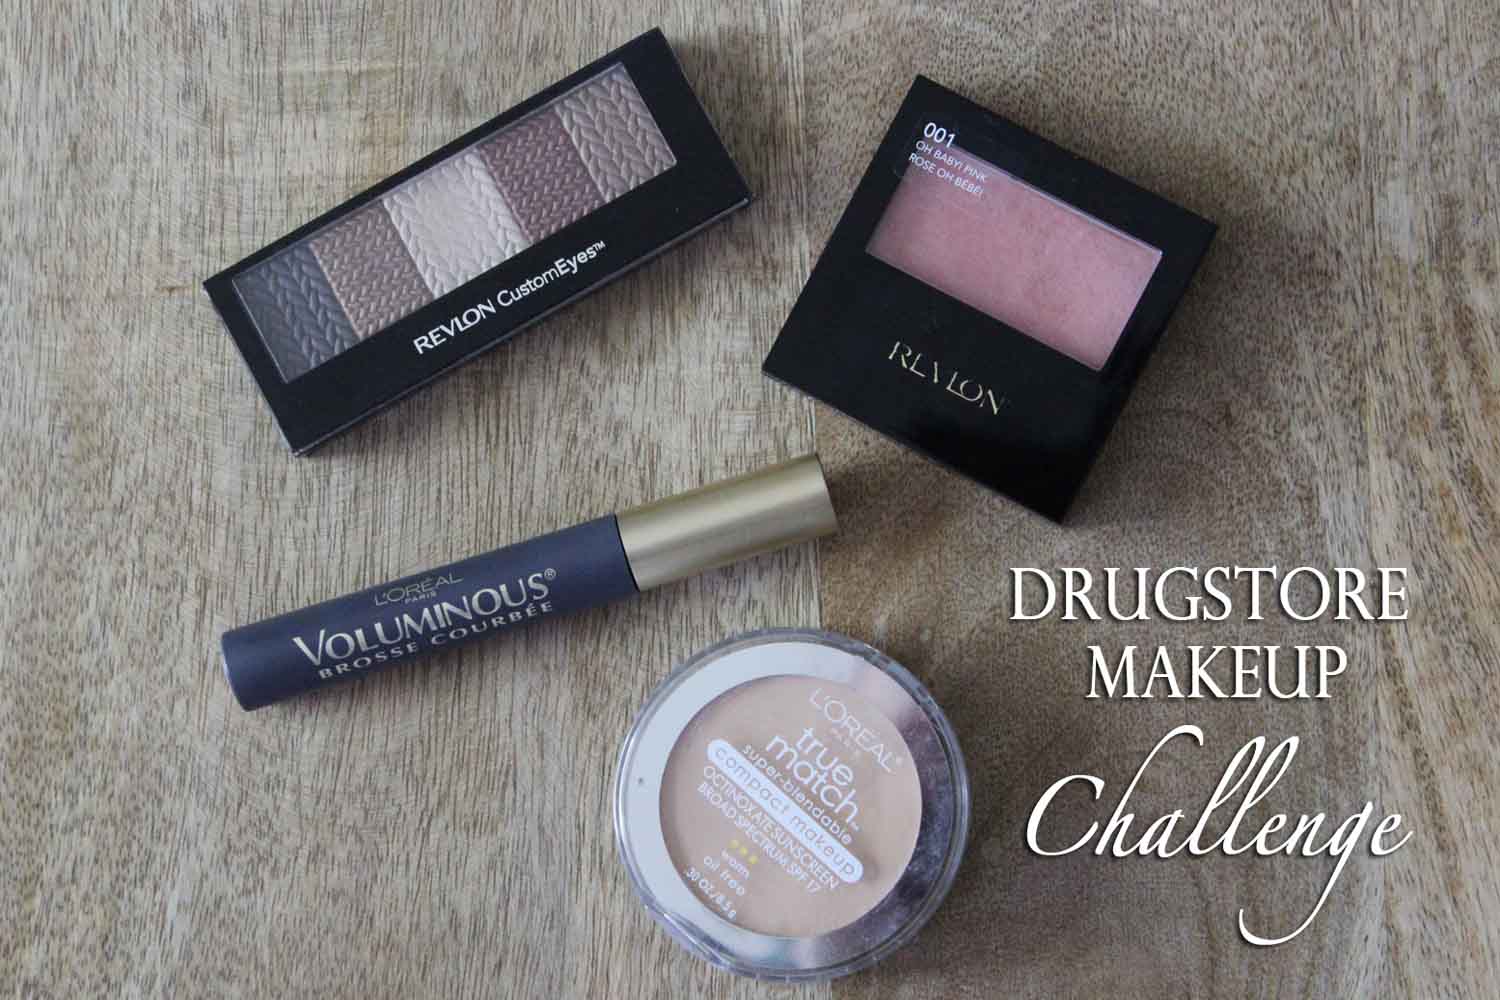 Drugstore Makeup Challenge